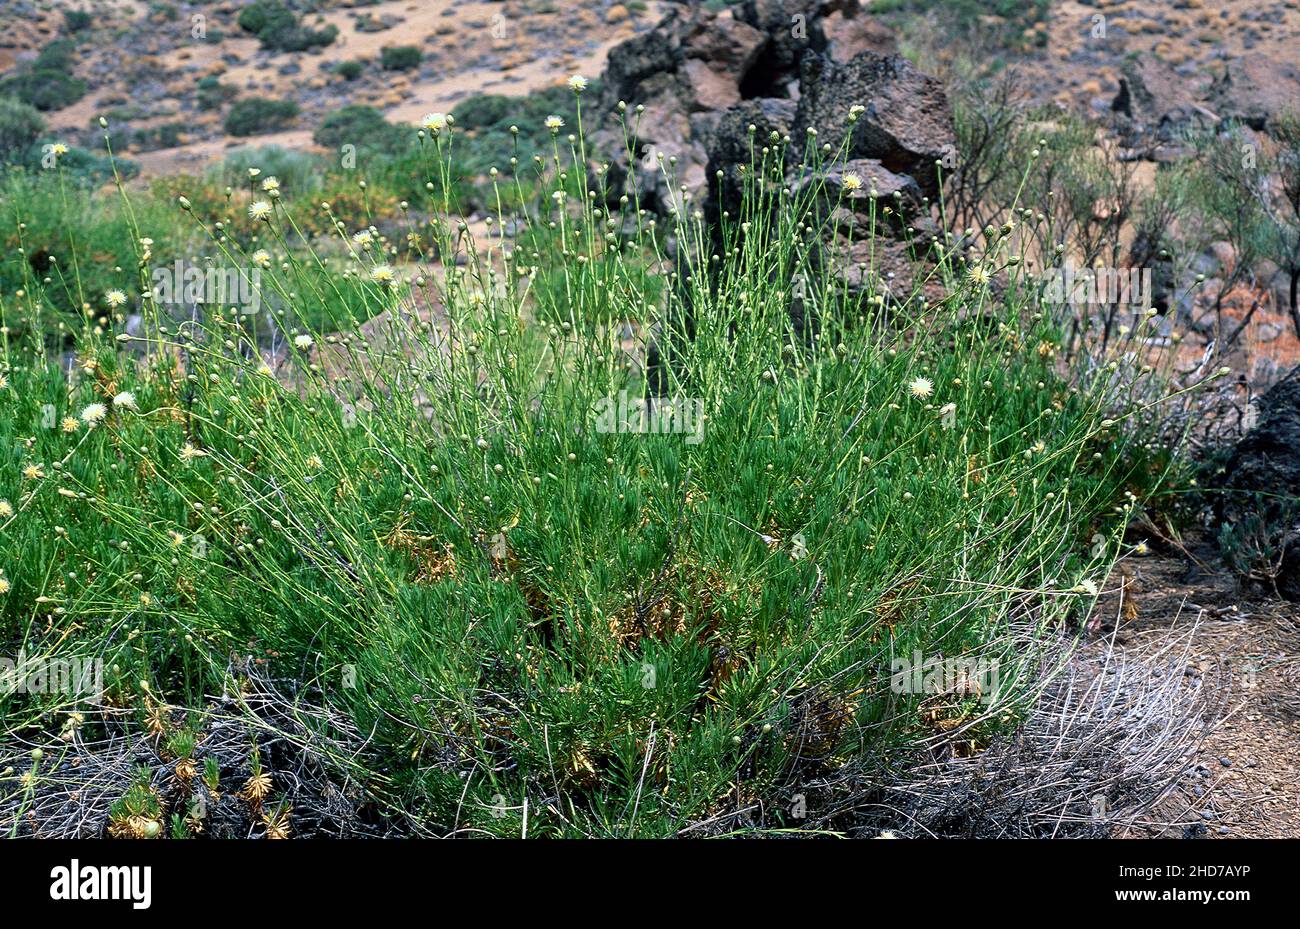 Cabezon de la cumbre (Cheirolophus teydis) is a shrub endemic to Tenerife and La Palma mountains. This photo was taken in Las Canadas del Teide Stock Photo